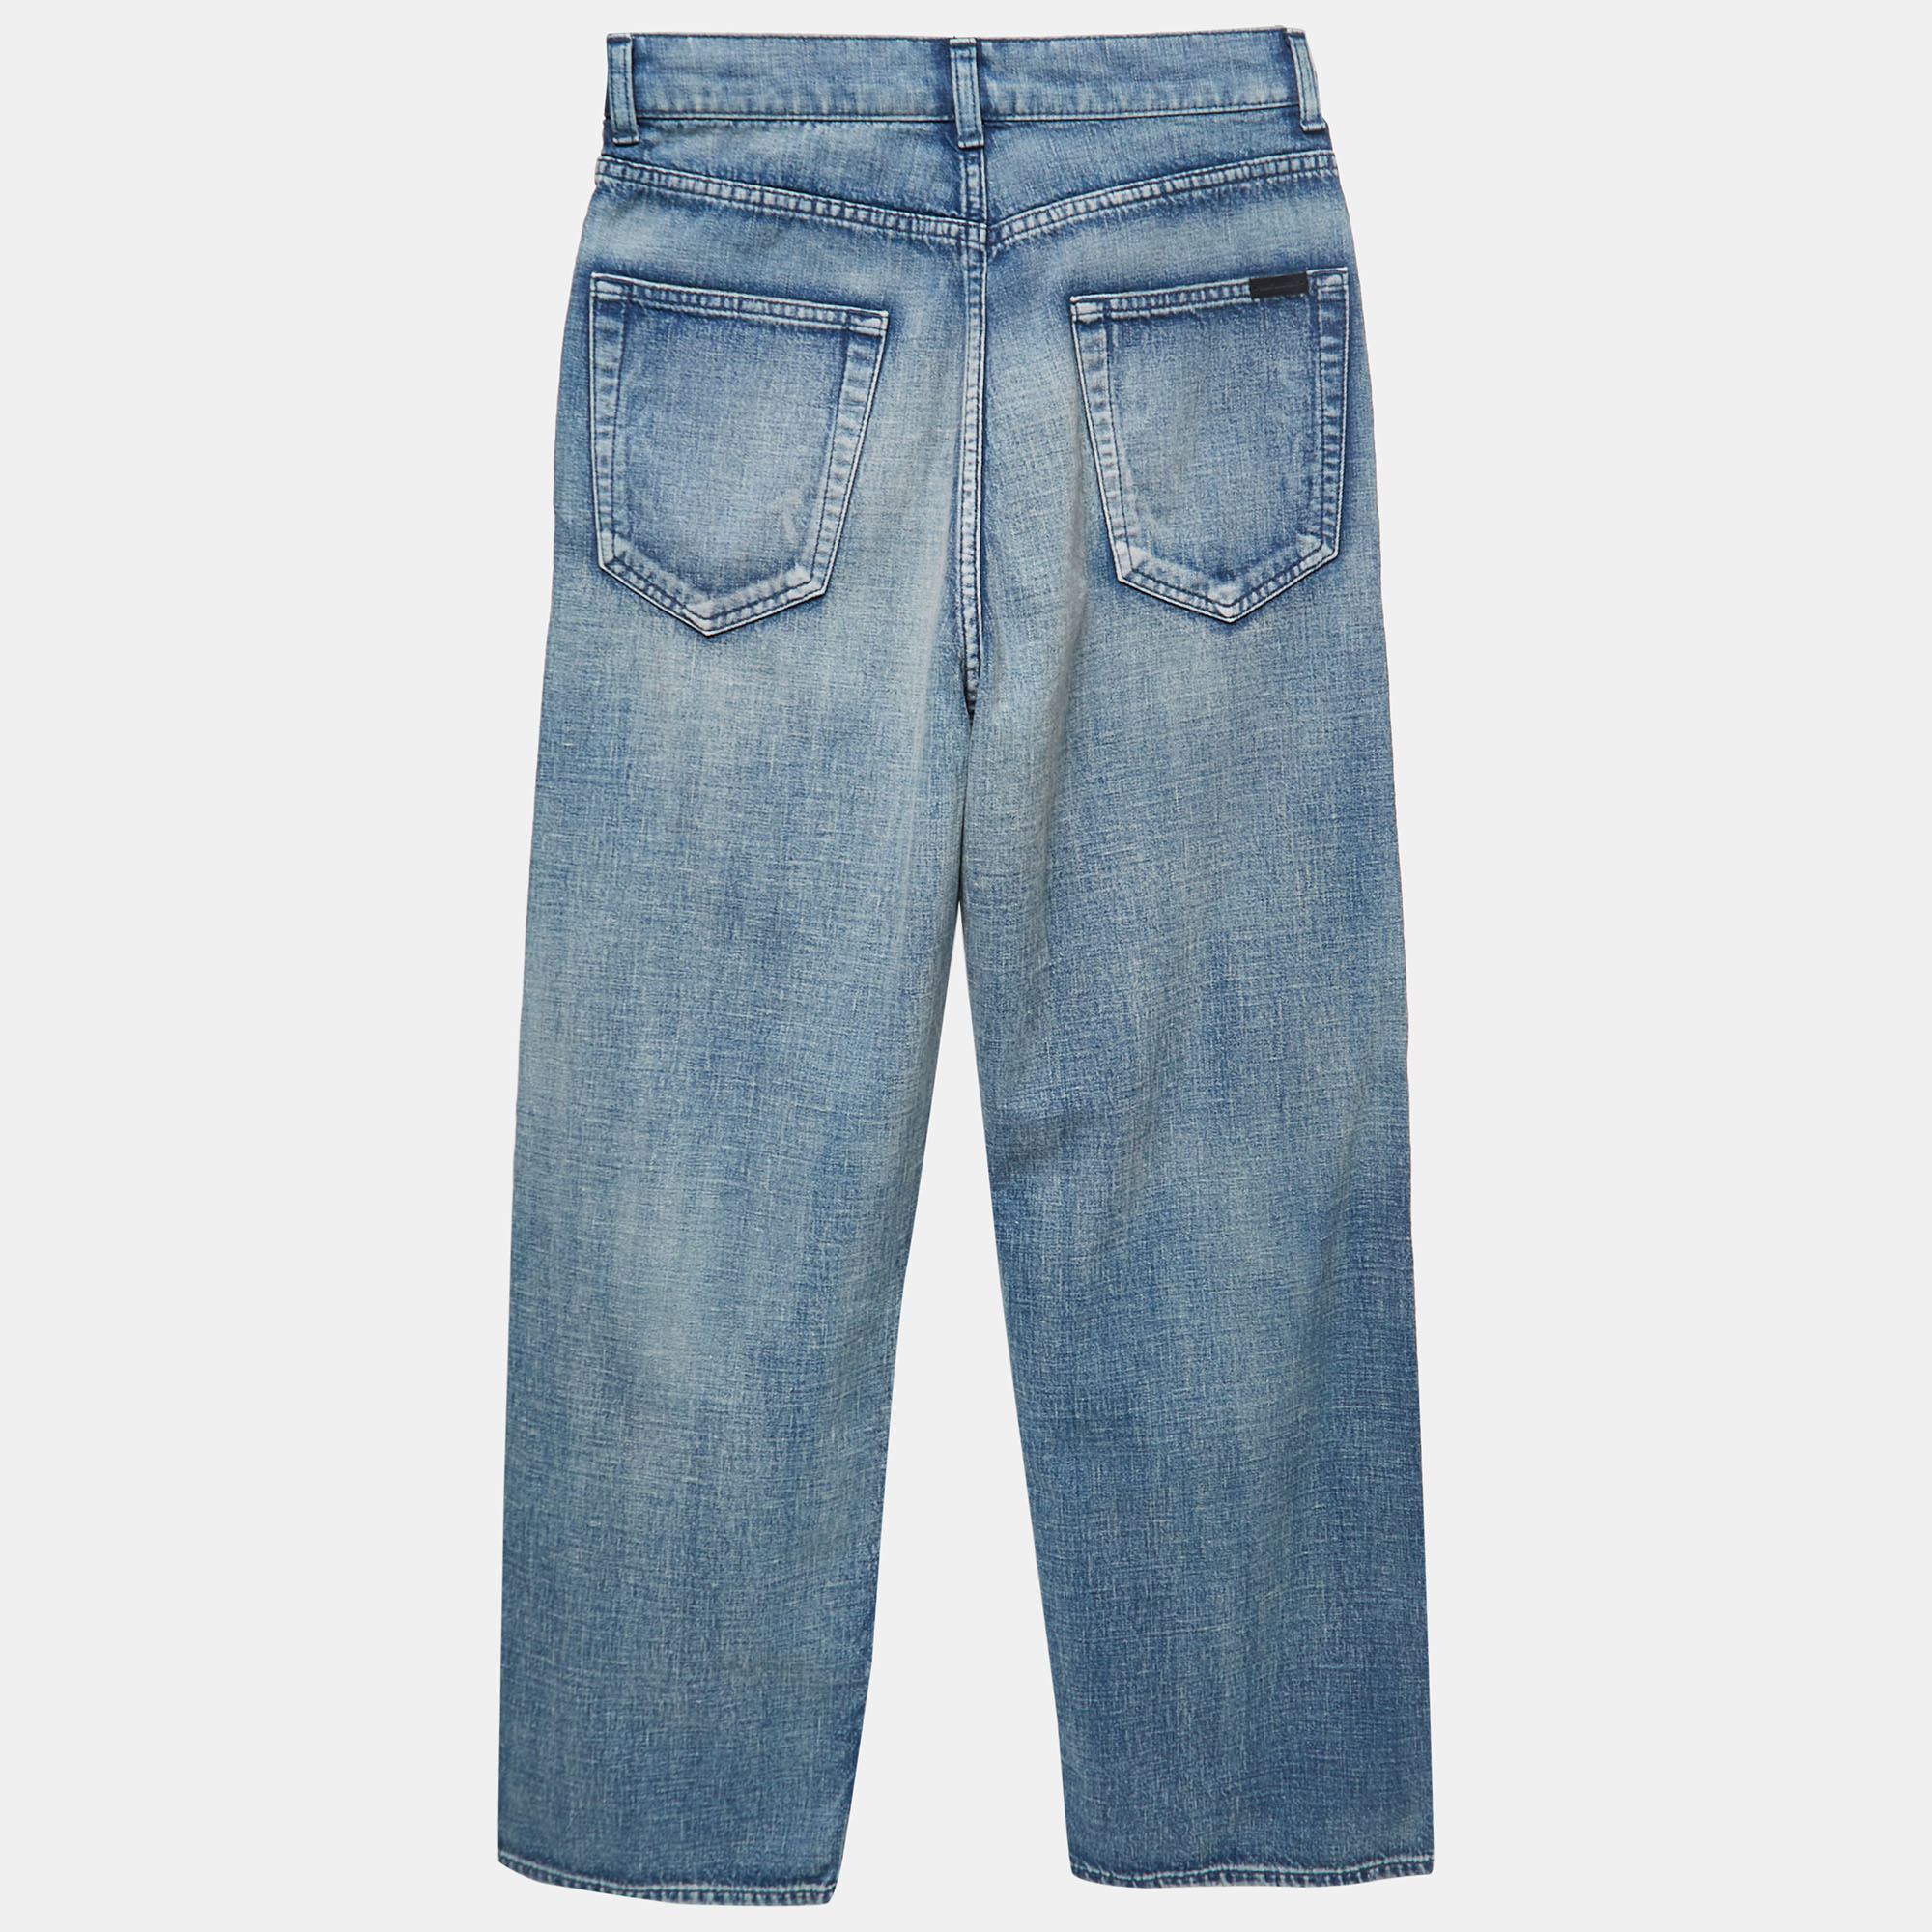 

Saint Laurent Paris Blue Washed Denim High Waist Jeans  Waist 28